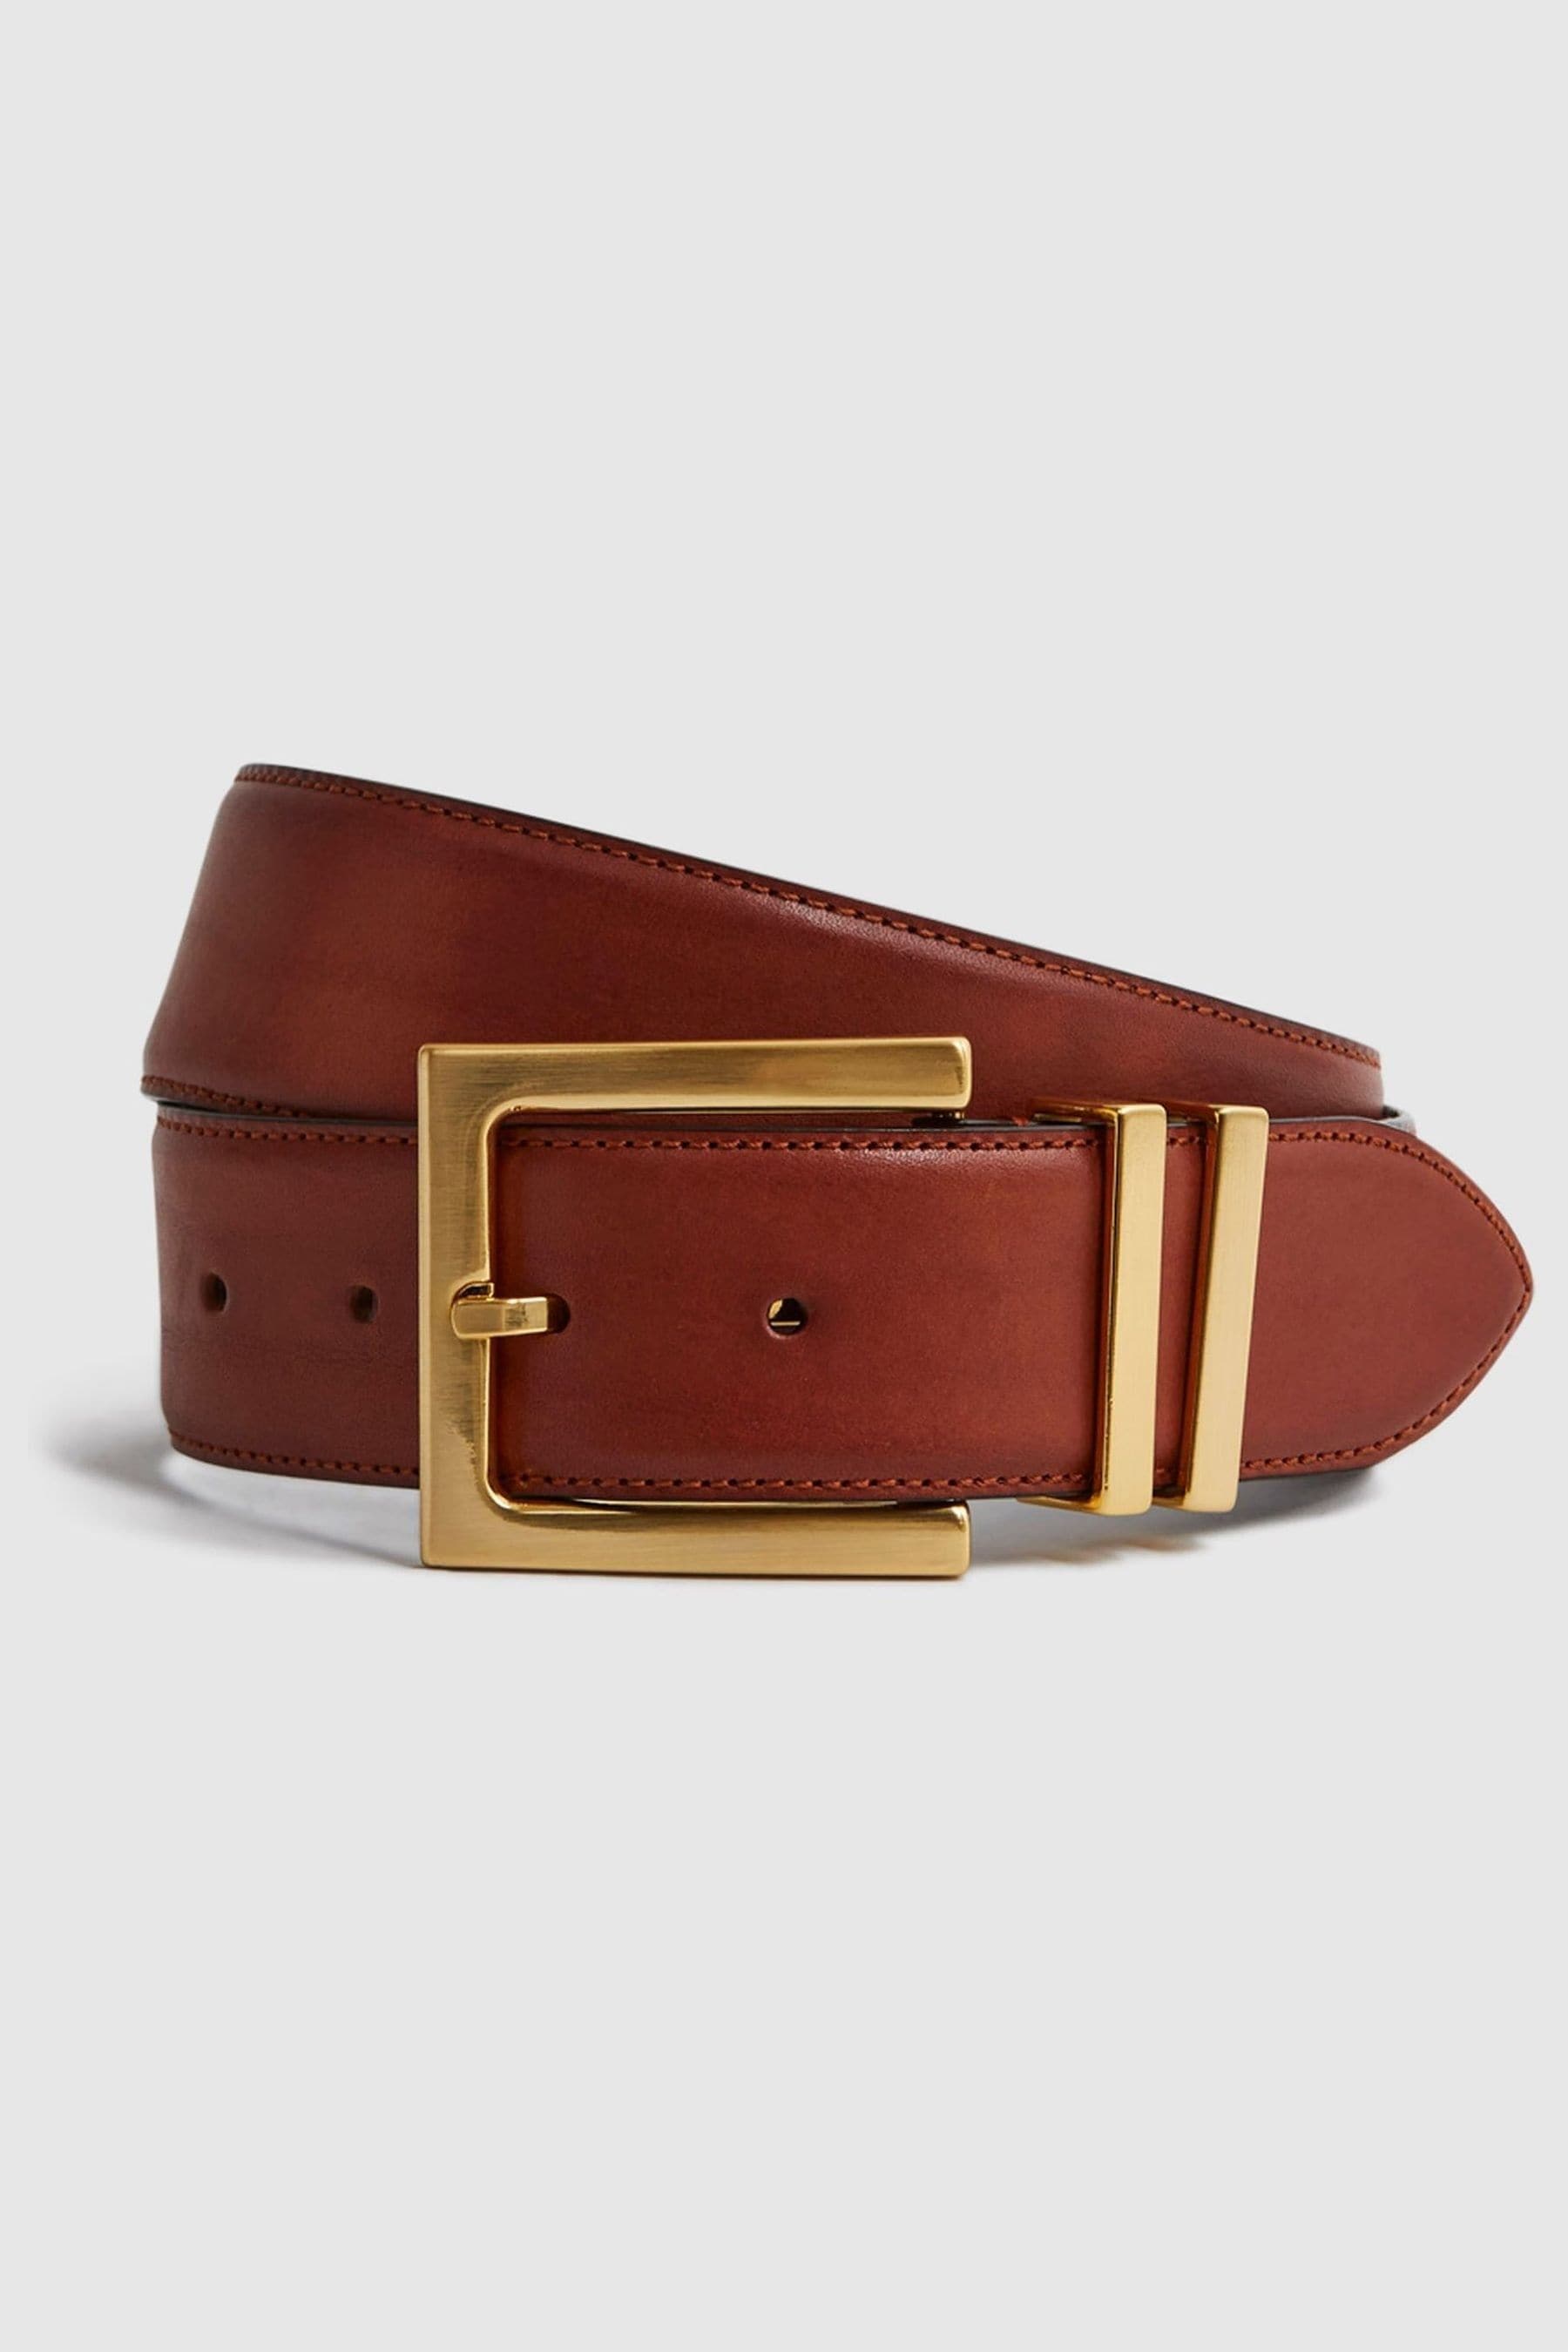 Brompton - Tan Leather Belt